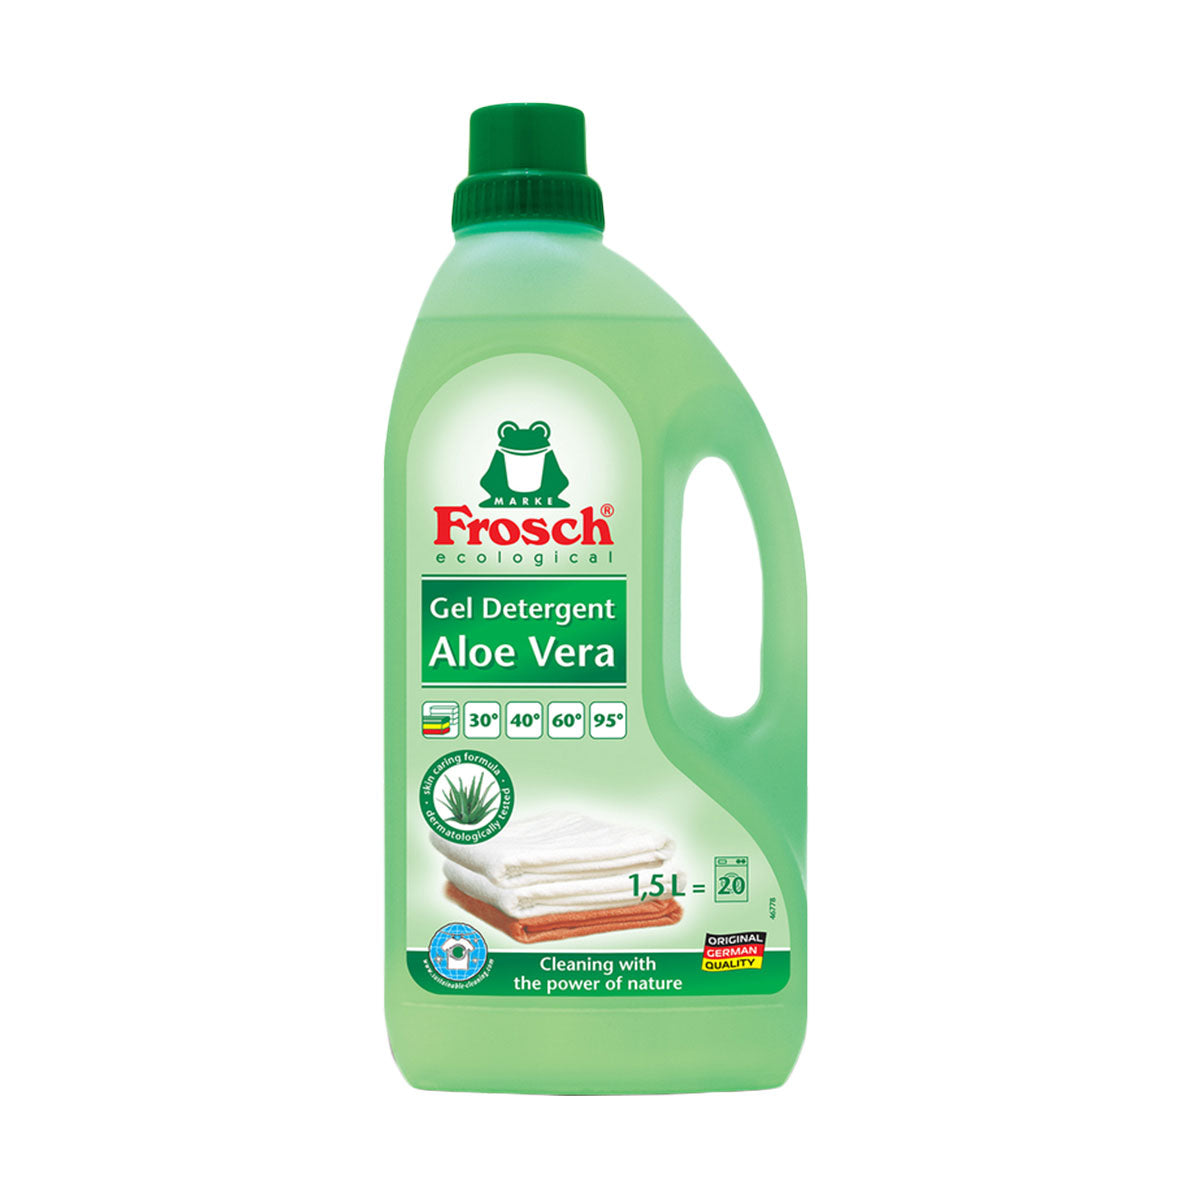 Detergente líquido Aloe Vera Frosch 1,5 lts - Producto Ecológico